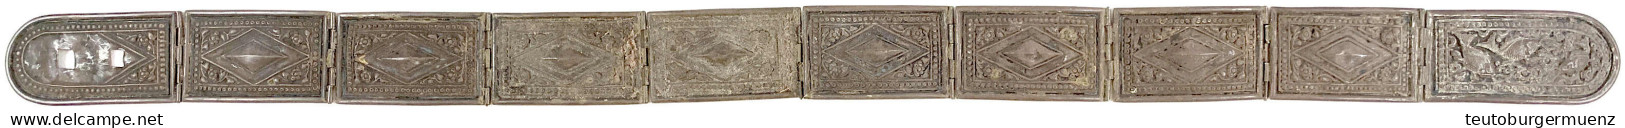 Silbergürtel Um 1900 Mit Fisch- Und Rauten-Ornamentik. Gürtelbreite 4,1 Cm, Gesamtlänge 71 Cm. 184,77 G. Aus Kuching. Se - Malaysie